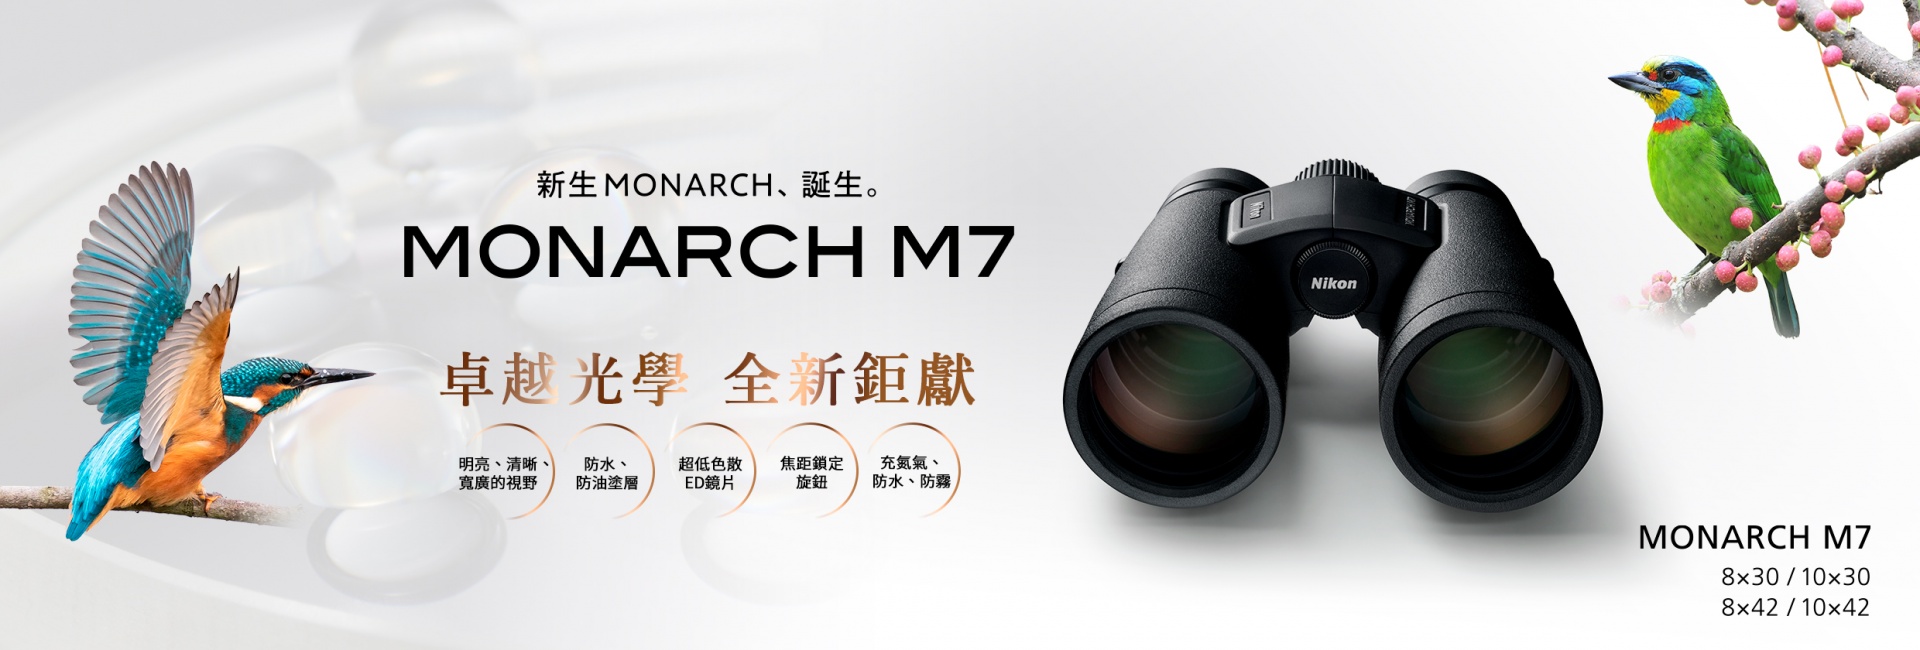 新發售MONARCH M7